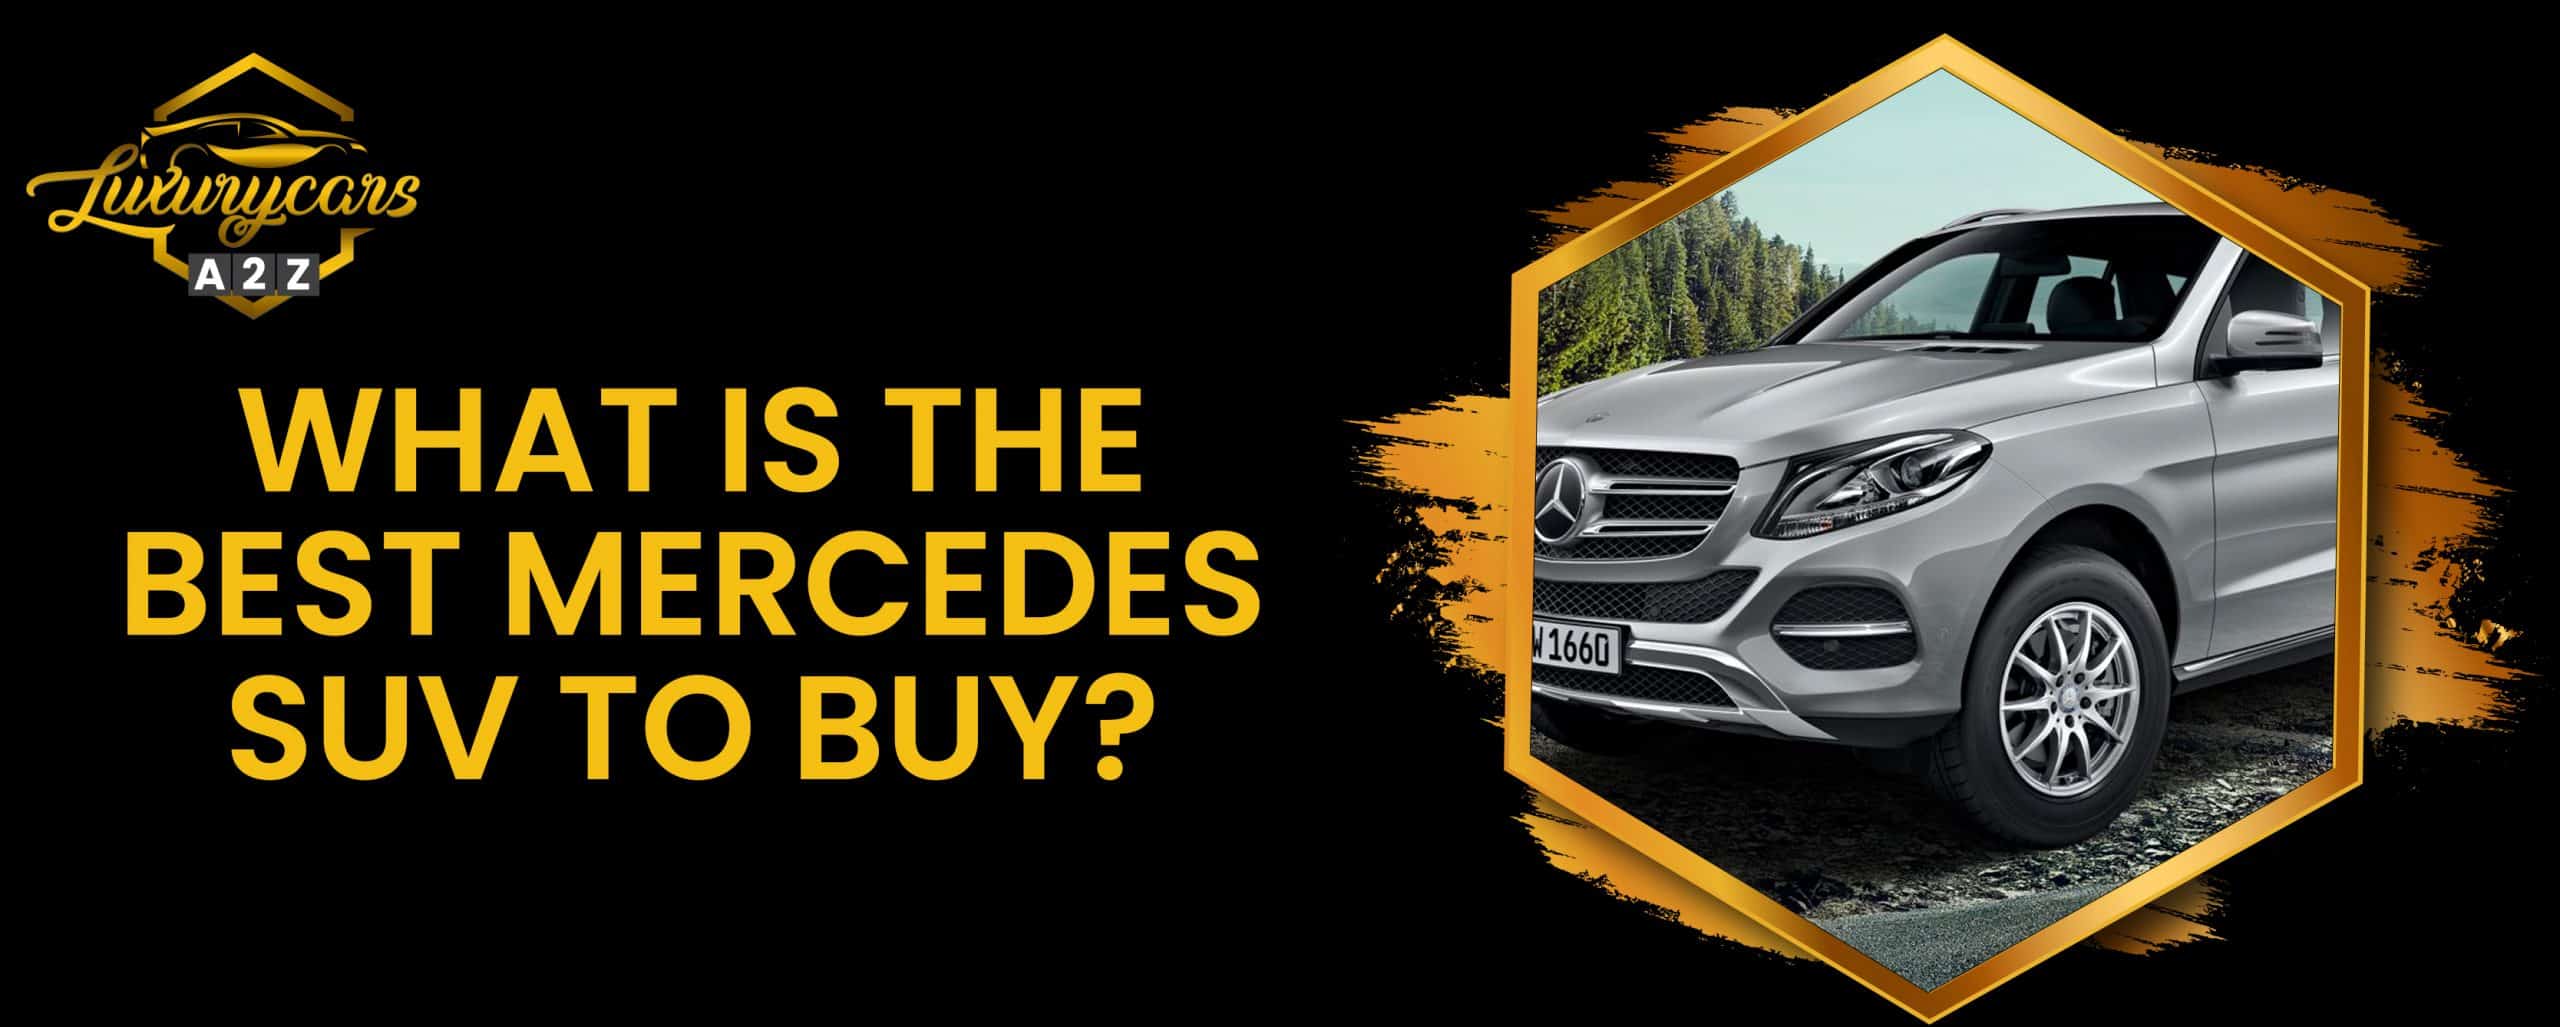 Quel est le meilleur SUV Mercedes à acheter ?